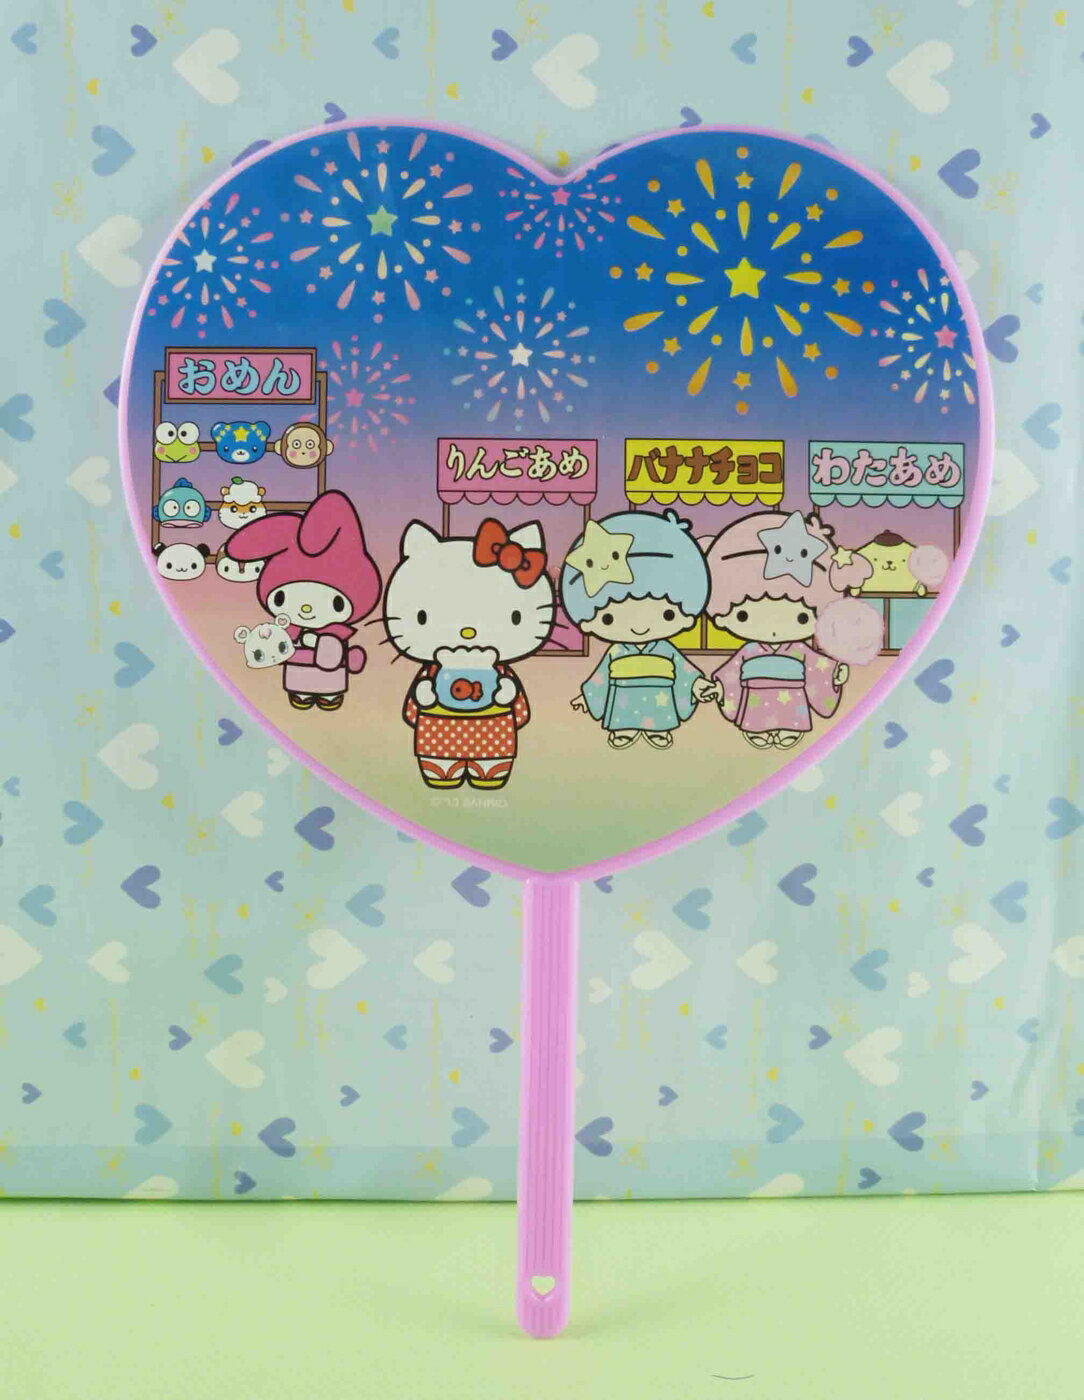 【震撼精品百貨】Hello Kitty 凱蒂貓 扇子-愛心外型-煙火 震撼日式精品百貨